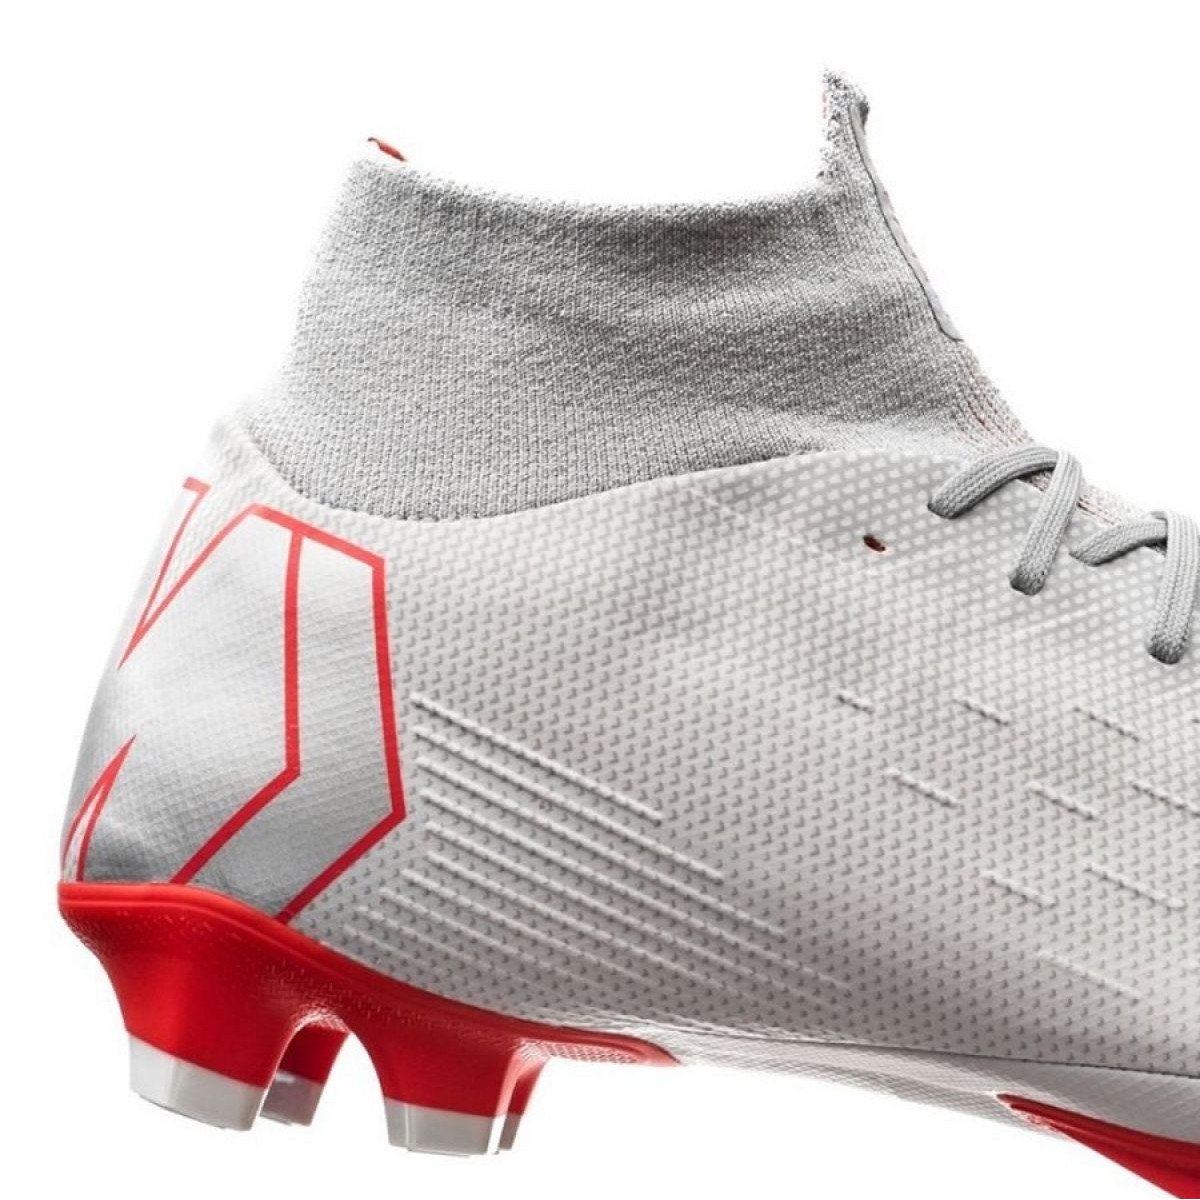 Nike Mercurial Vapor Soccer Shoes for sale eBay neoattack